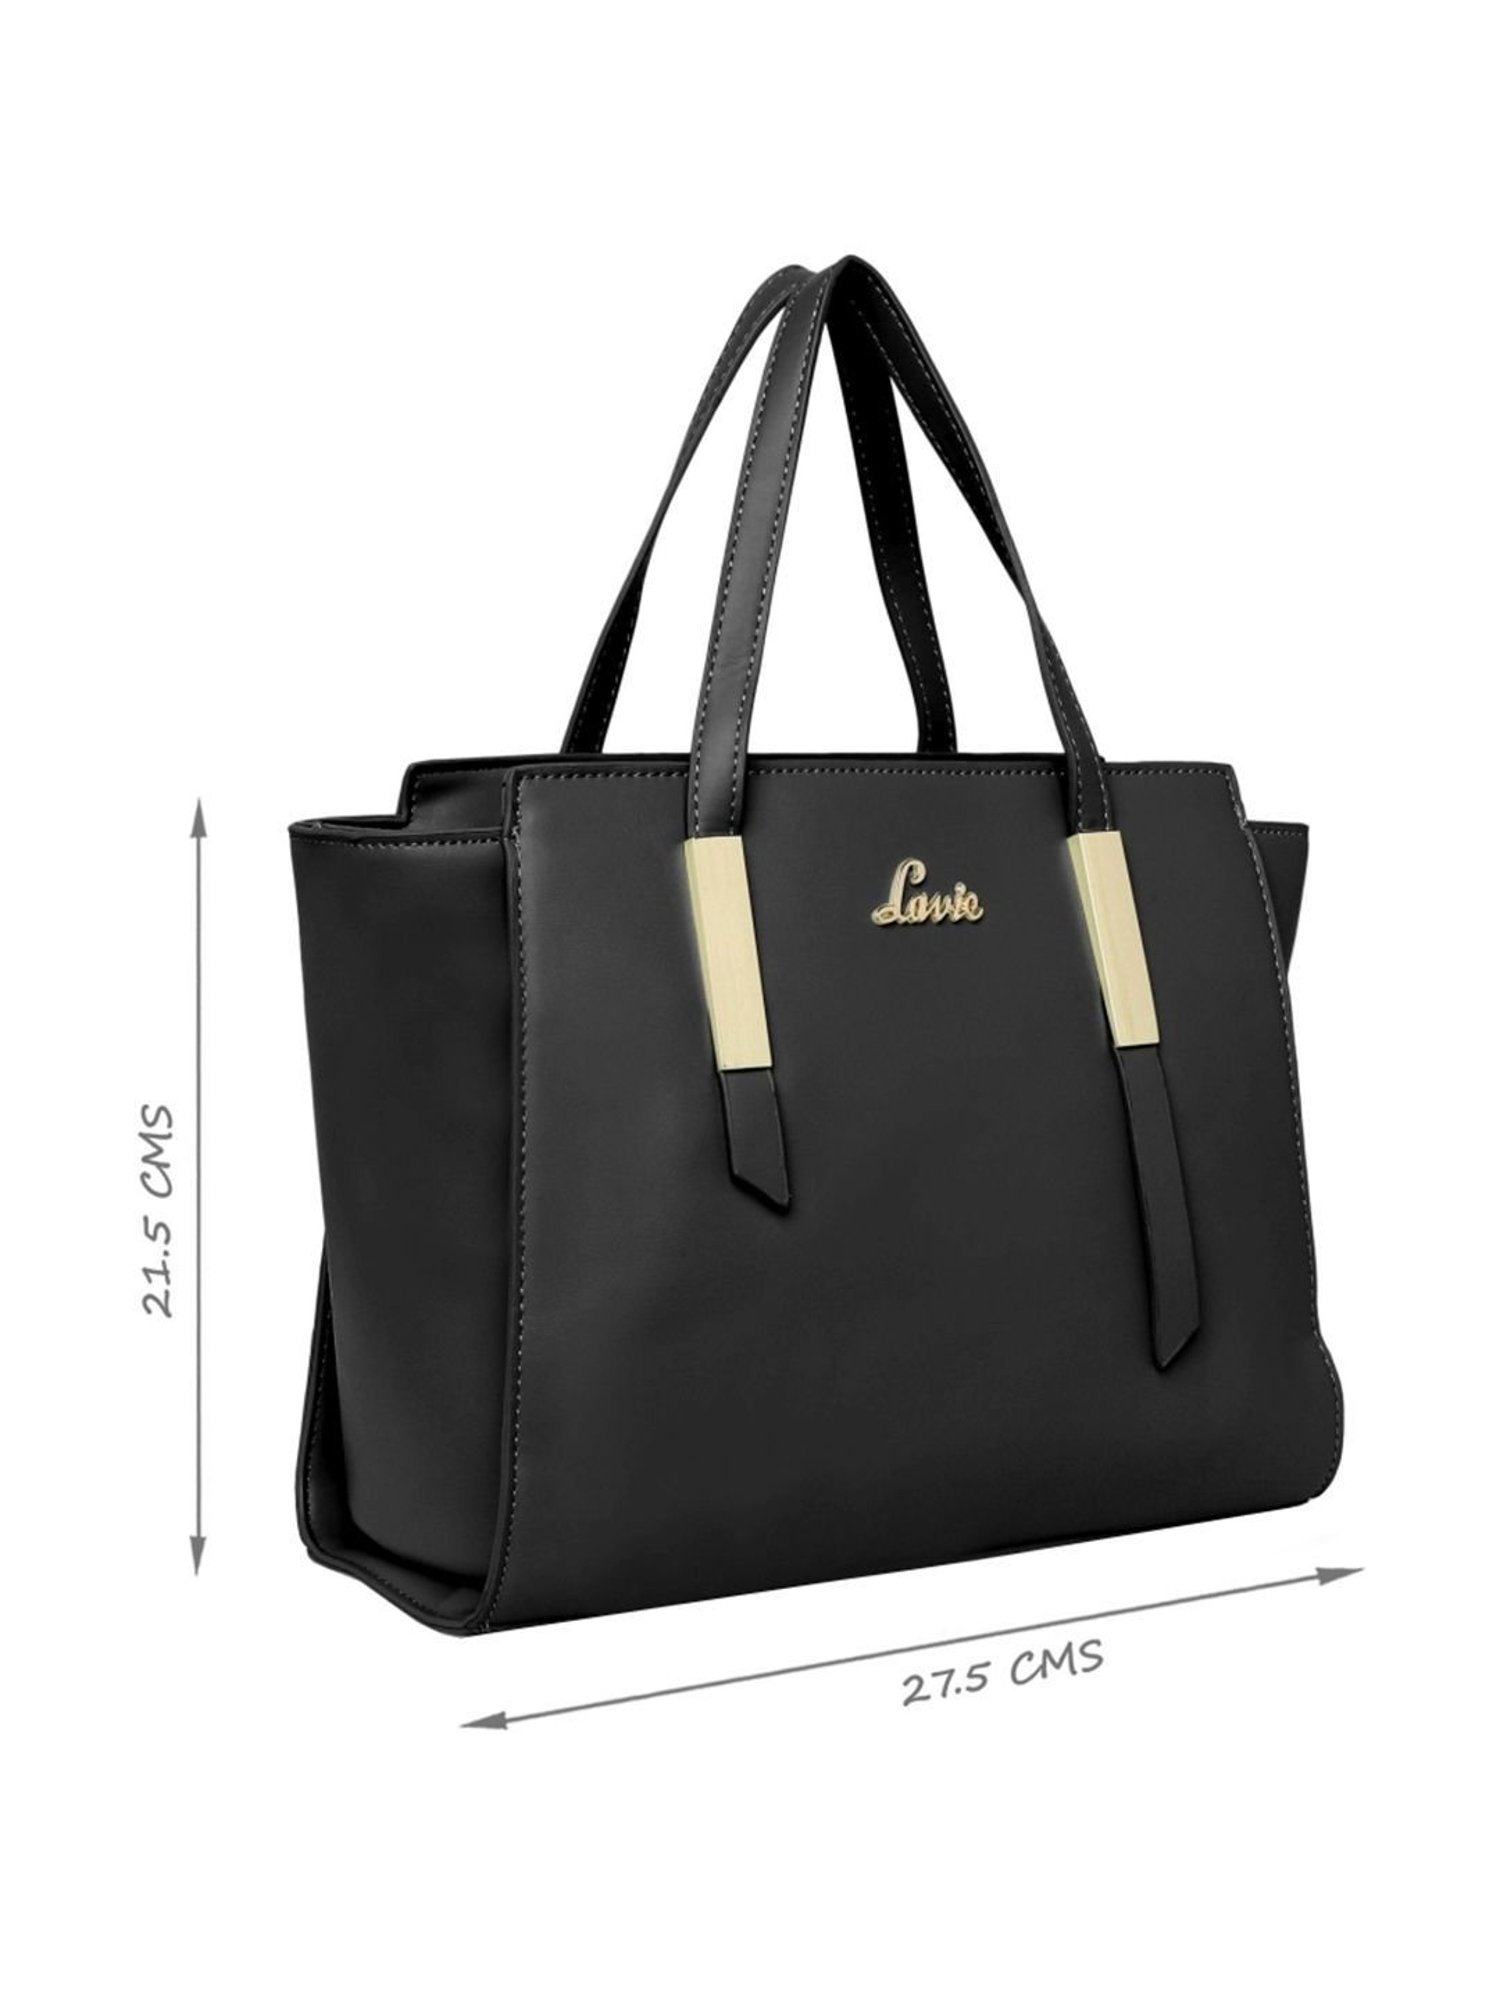 Buy Lavie Celine Mint Small Women's Satchel Bag Online from Lavie World